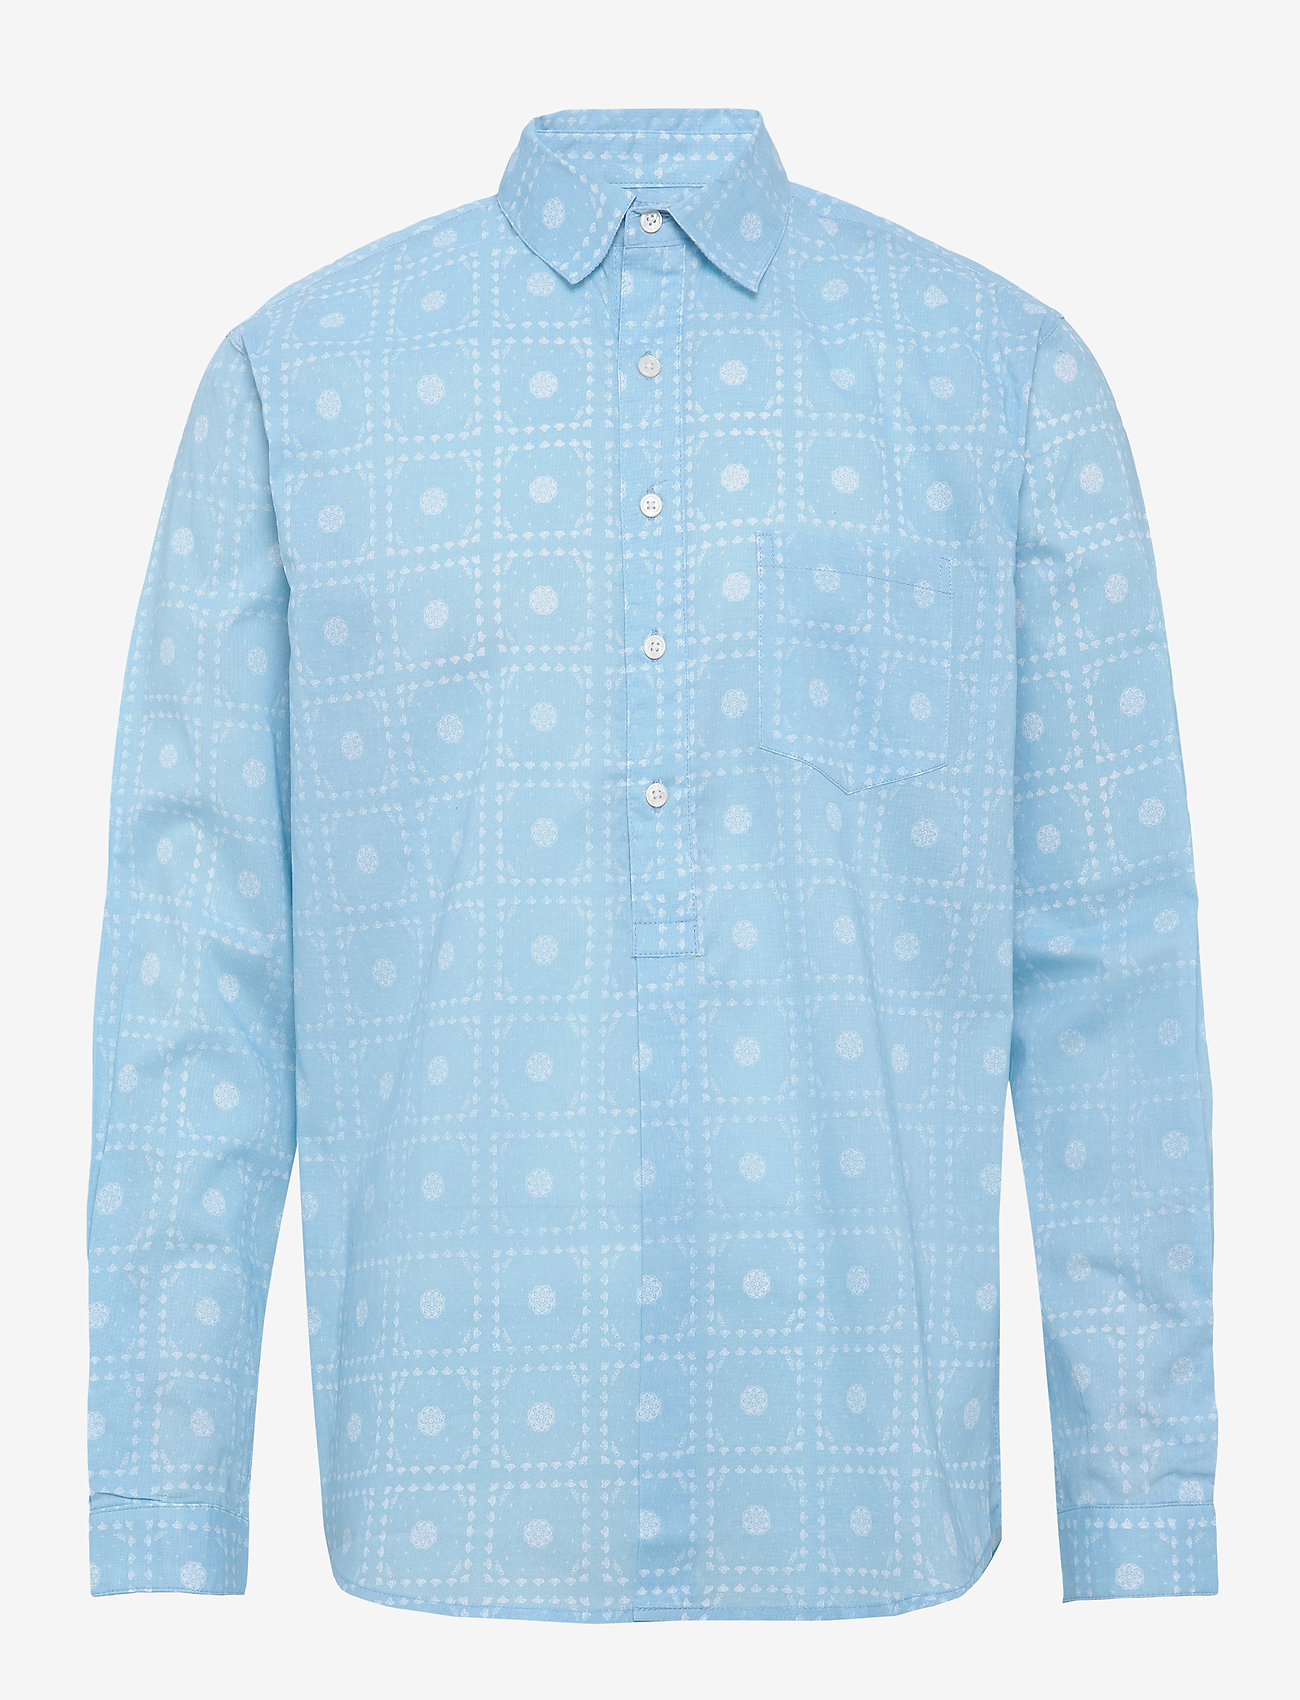 Resteröds - Pop over shirt, paisley - lietišķā stila krekli - blue - 0